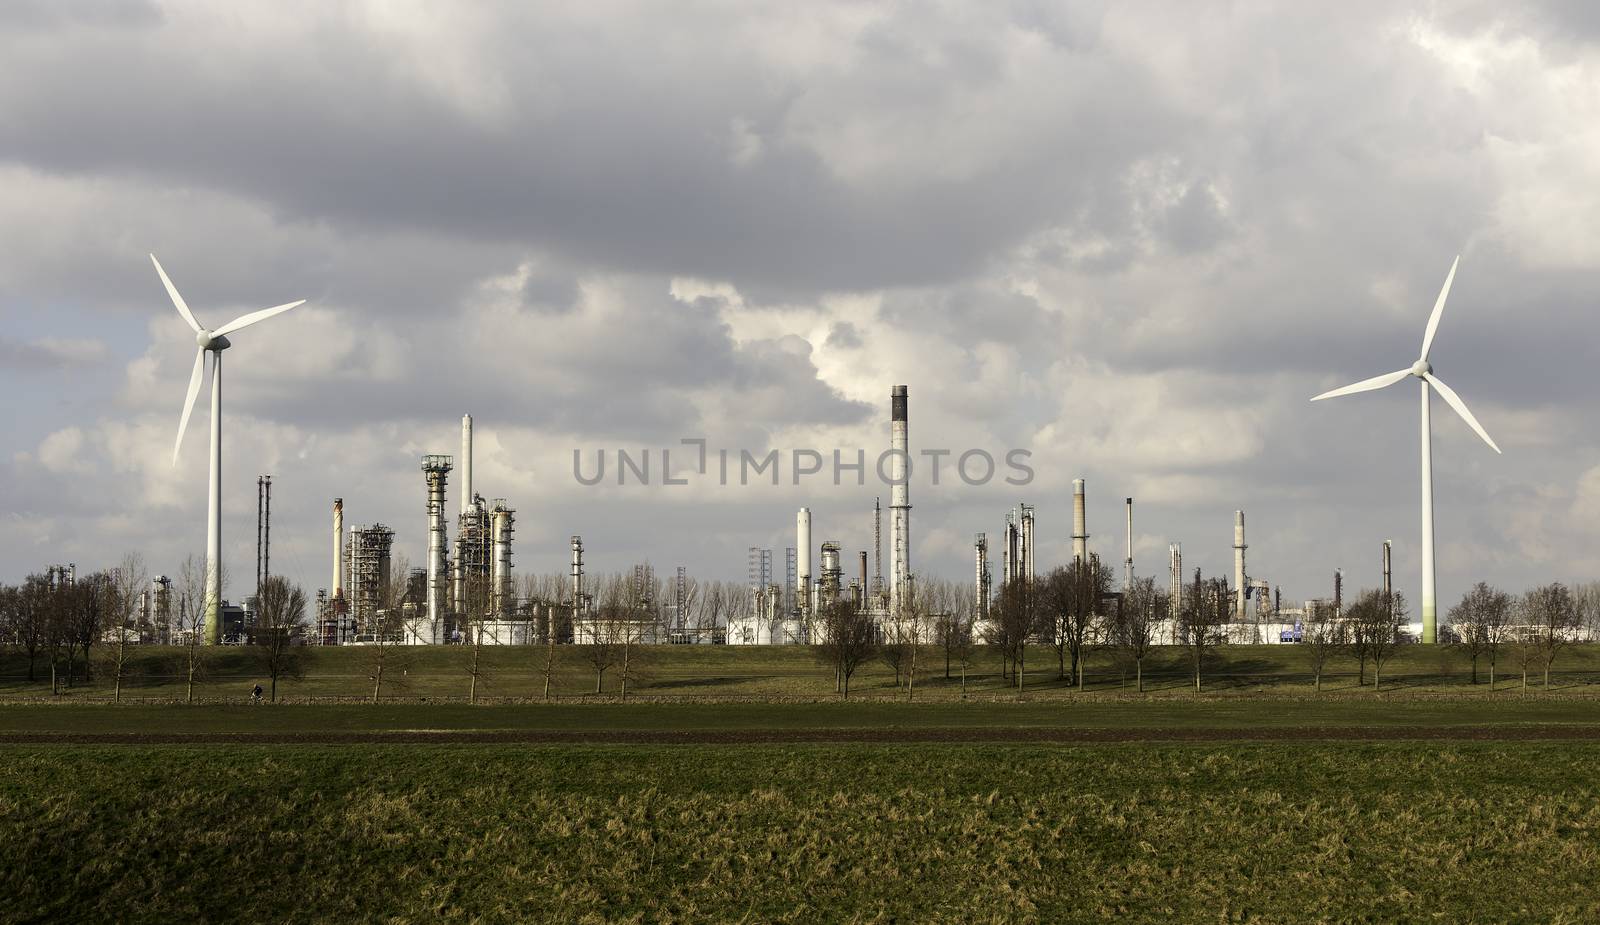 skyline refinery europoort rotterdam by compuinfoto